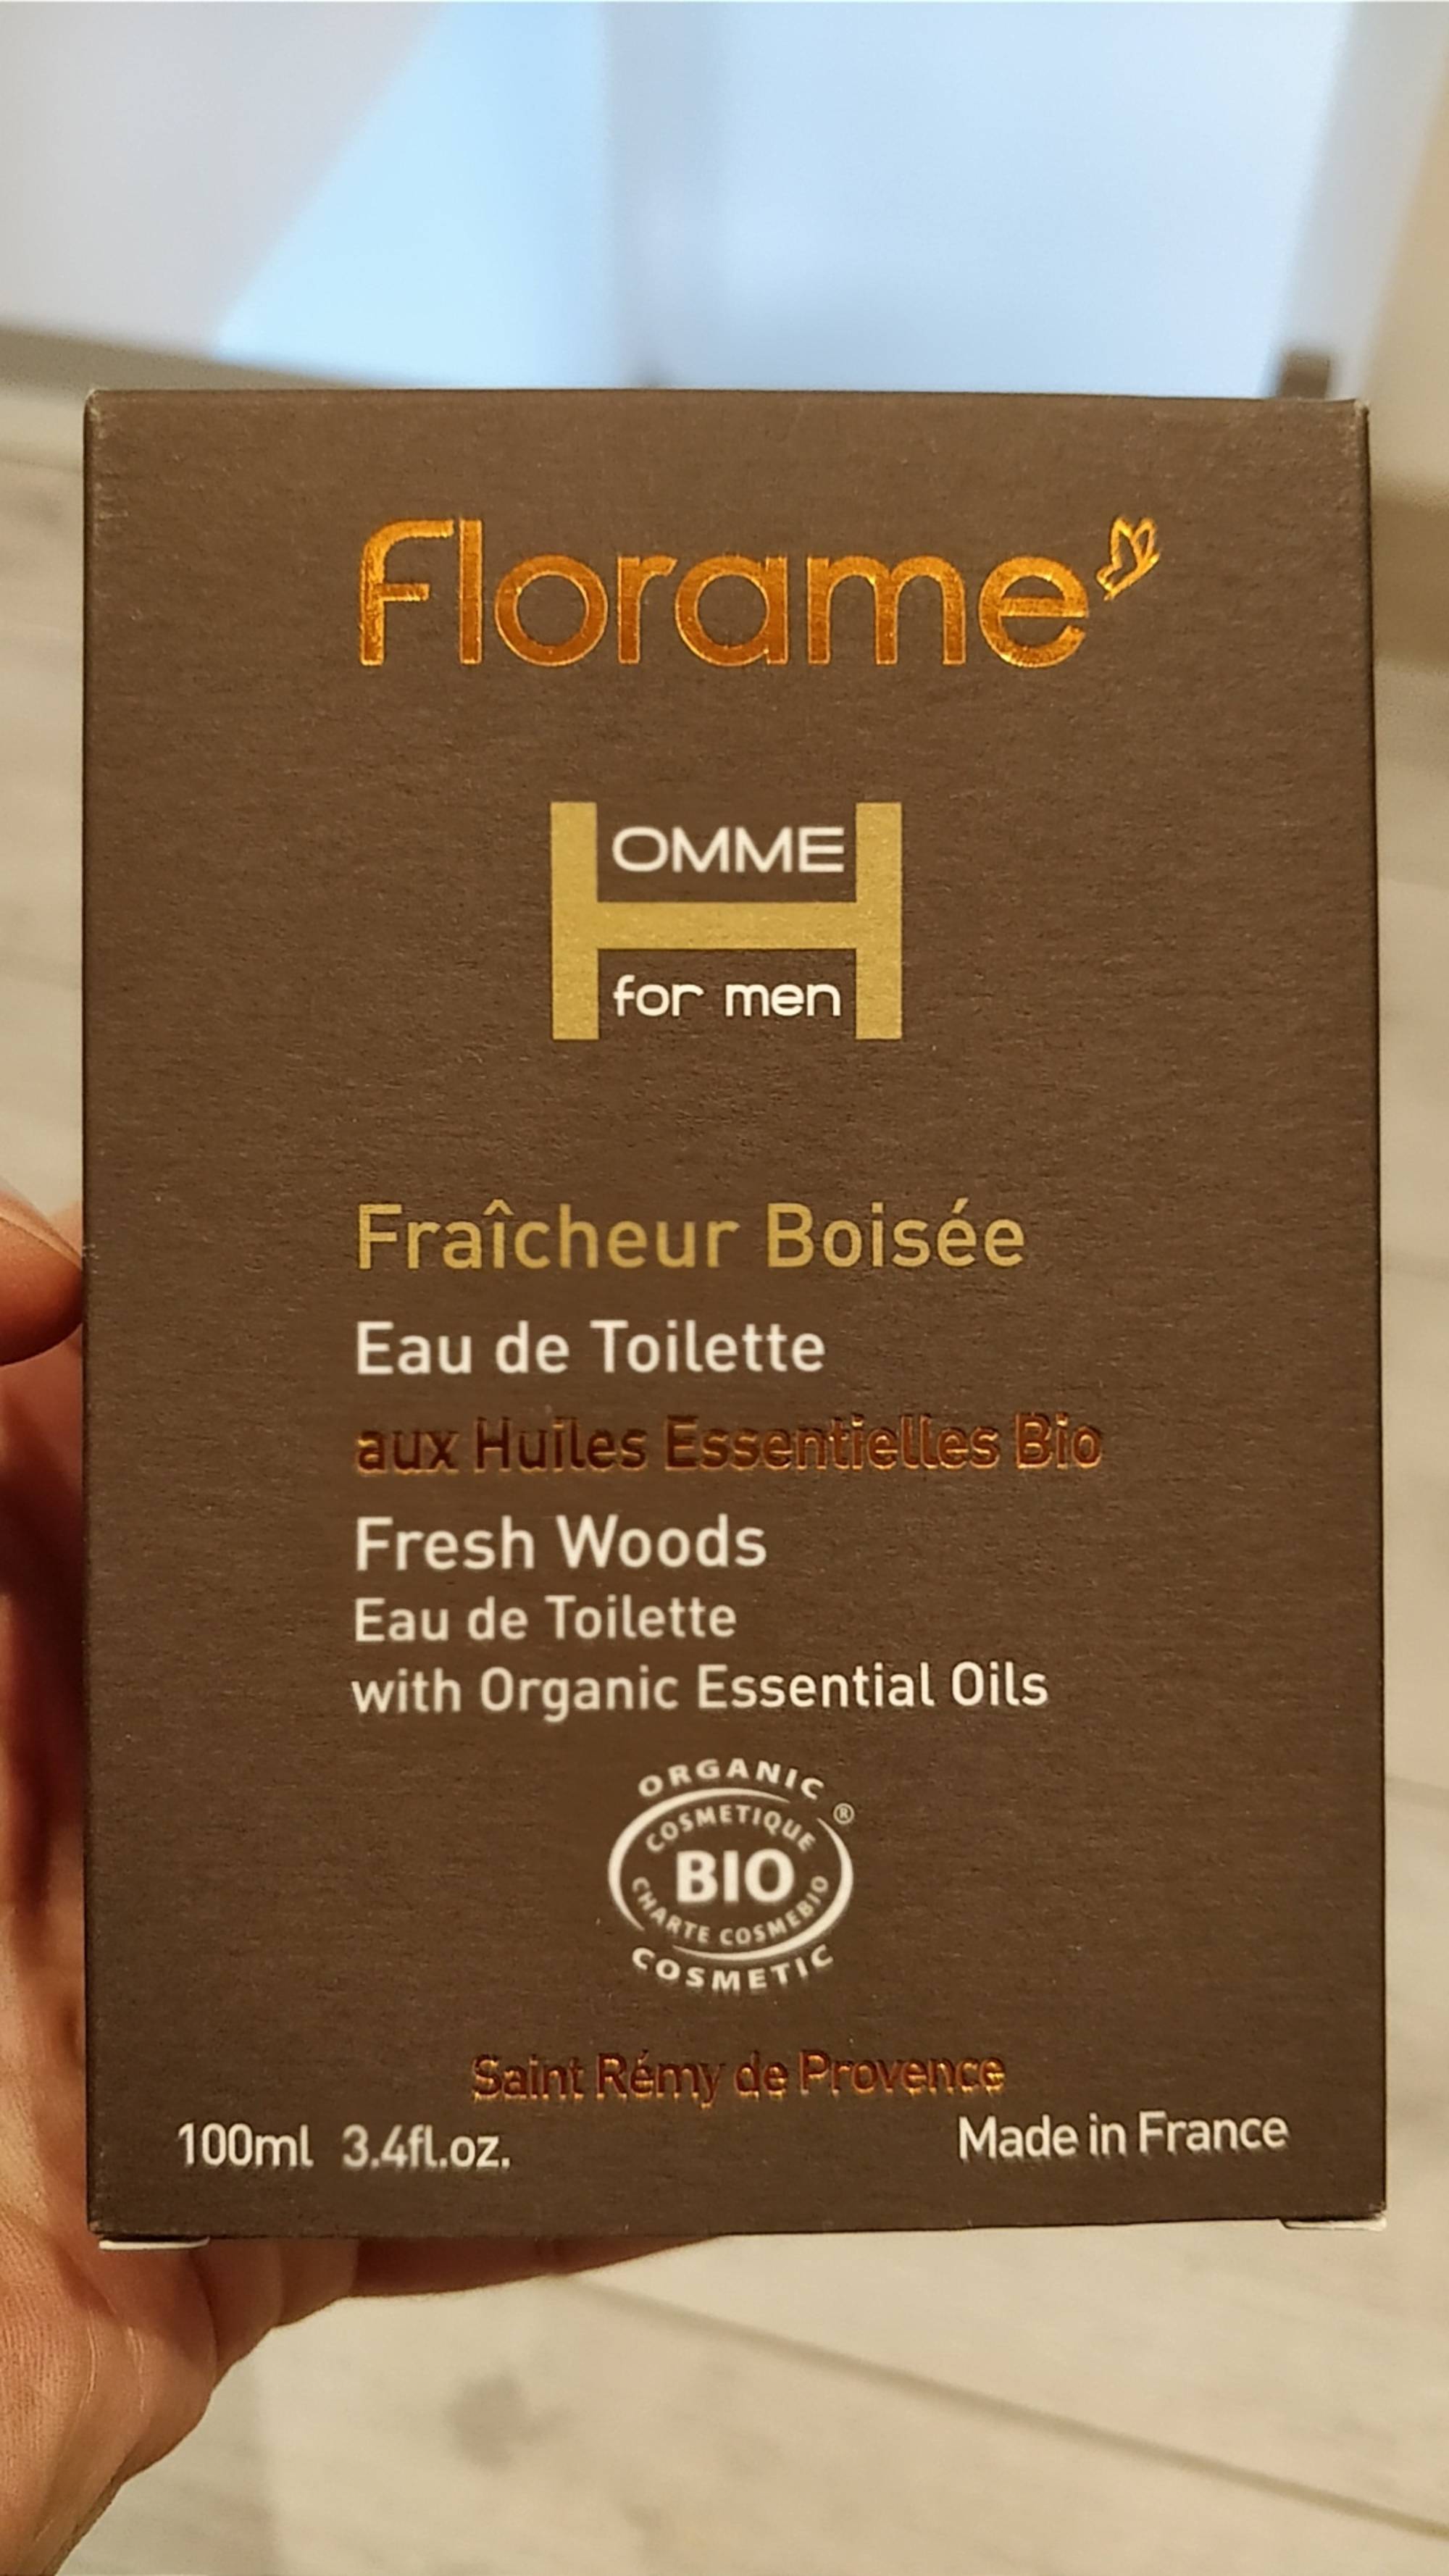 FLORAME - Fraîcheur boisée - Eau de toilette homme bio